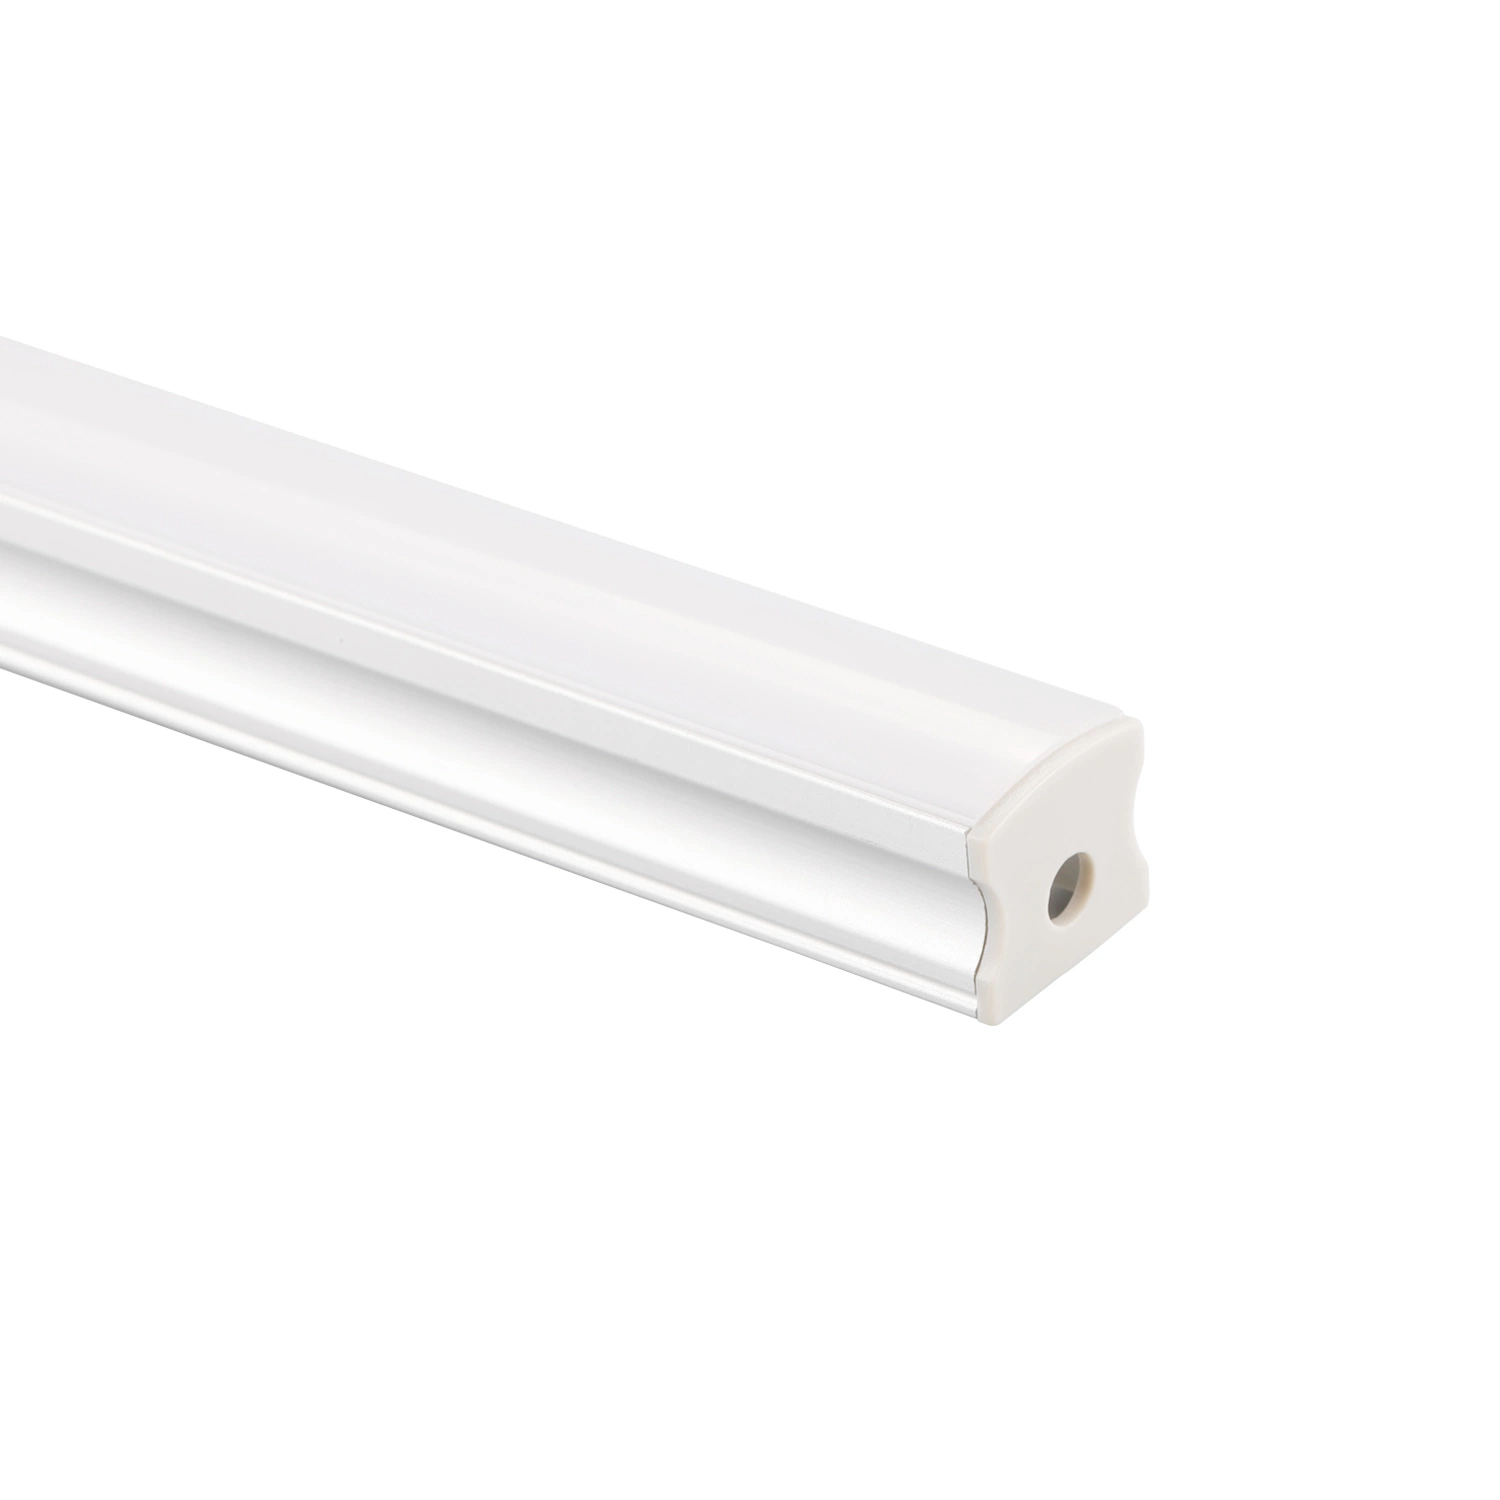 Profilé en aluminium pour bande LED avec encastré carré de 17X15mm pour montage en surface au sol, mur ou plafond